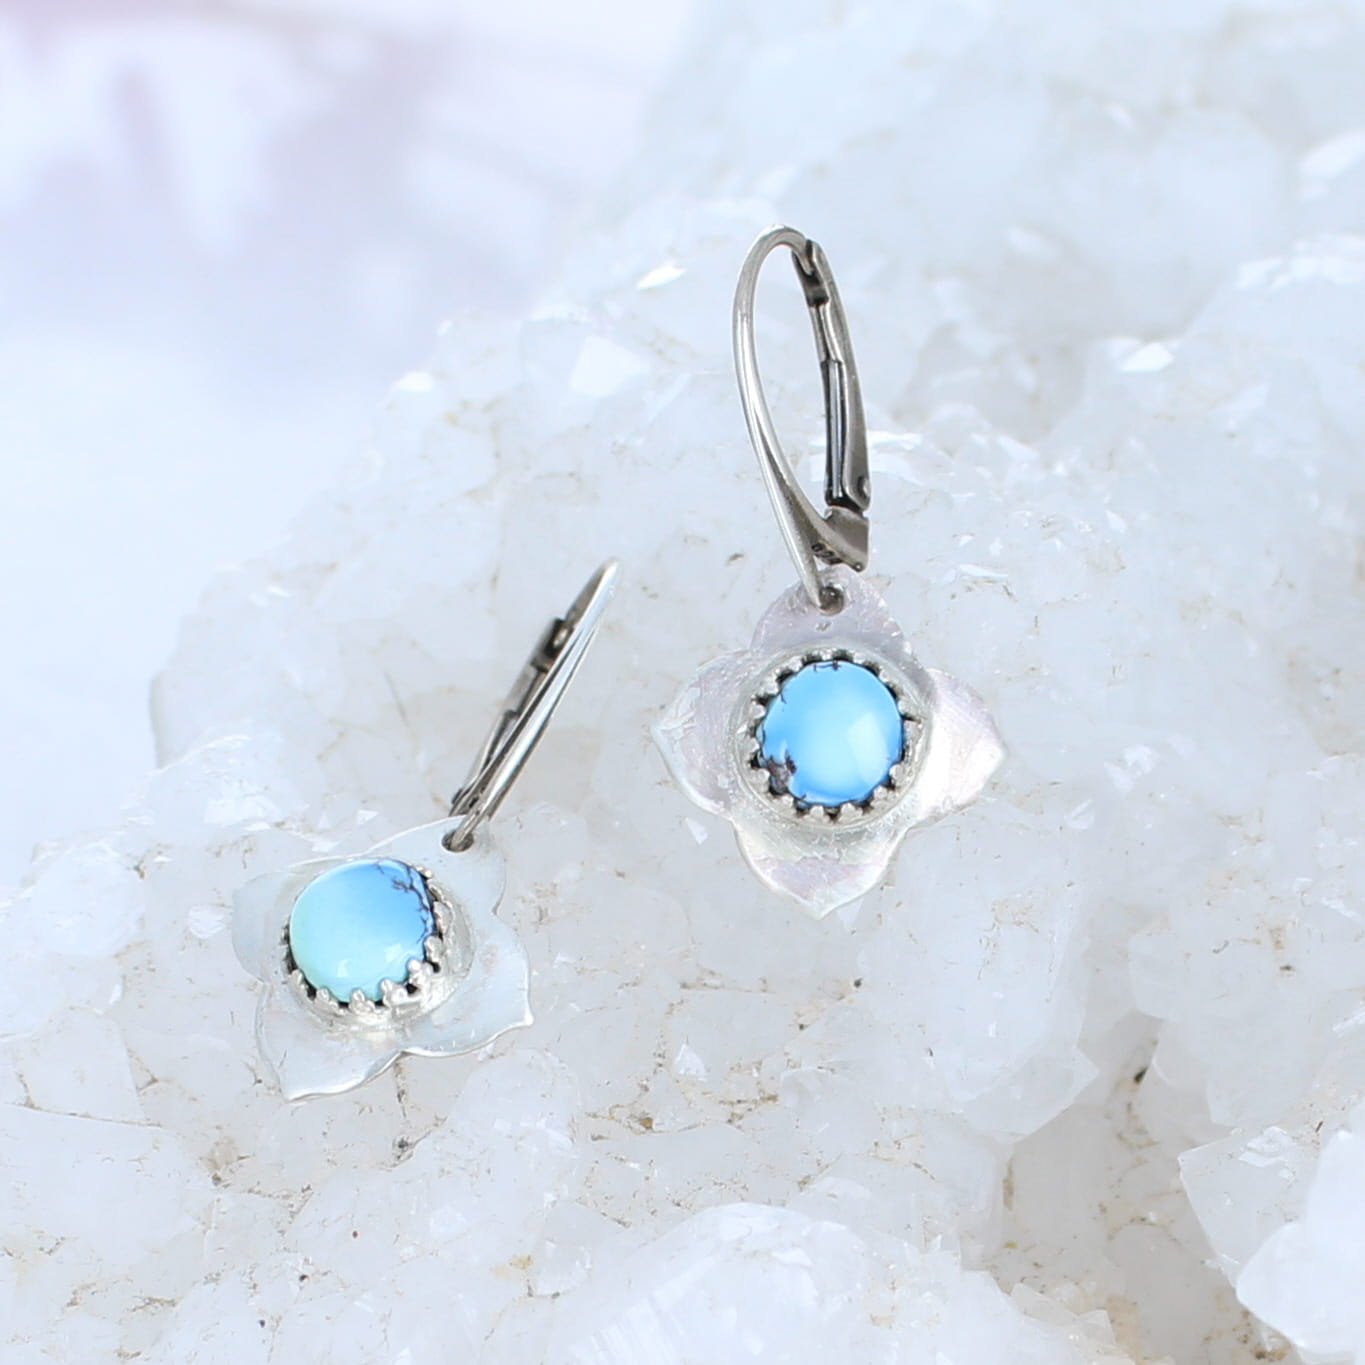 Kazakhstan Small Flower Earrings Sterling -NewWorldGems